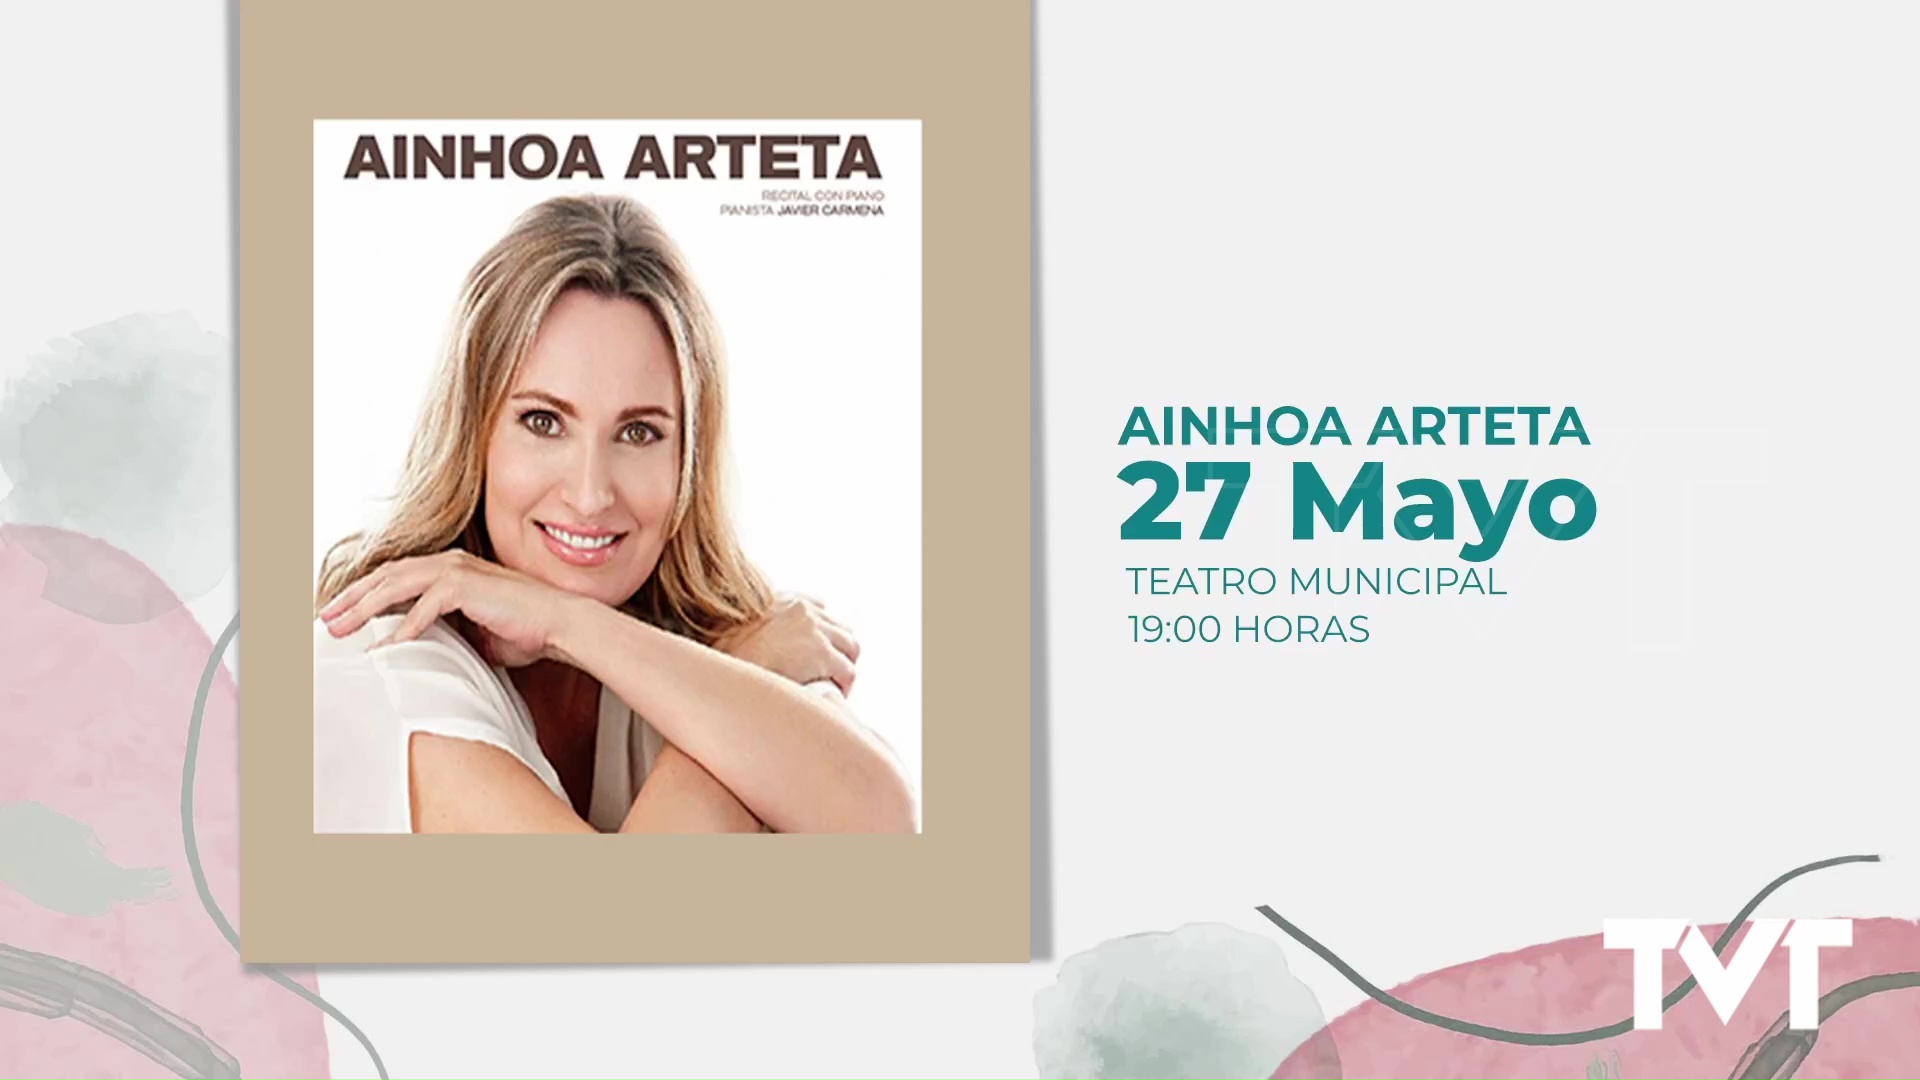 Imagen de Ainhoa Arteta a punto de colgar el cartel de sold out en Torrevieja para el concierto del sábado